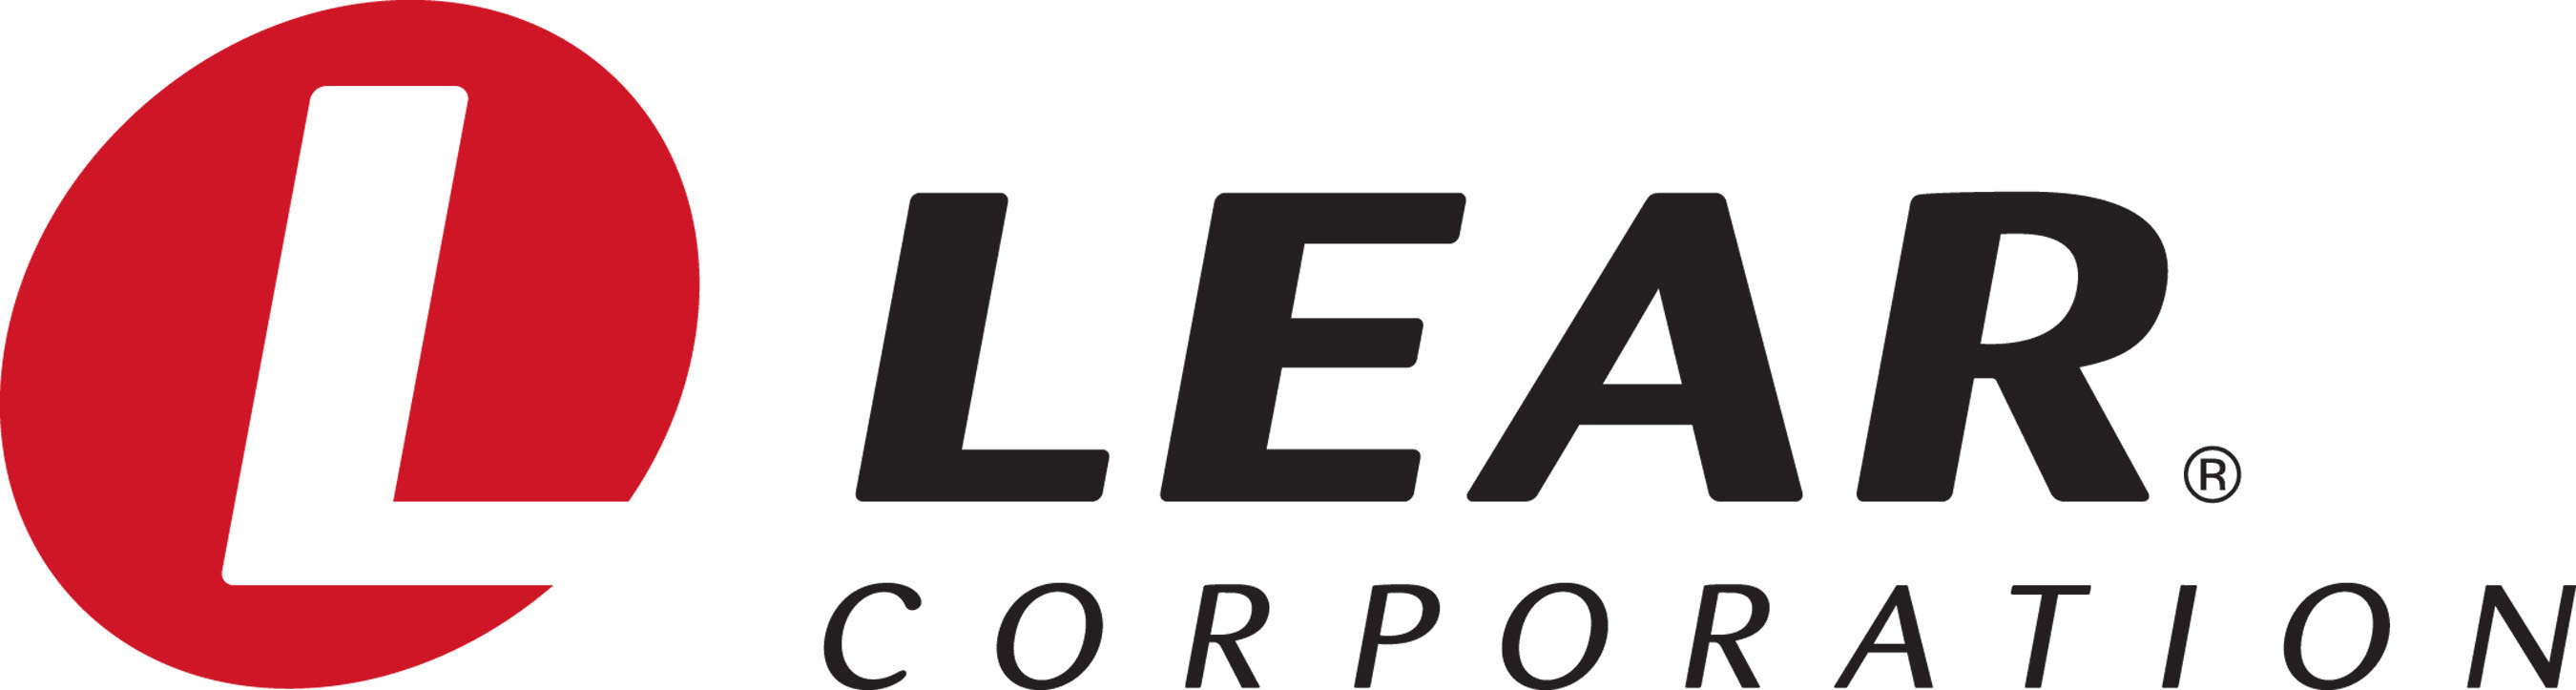 Lear Corporation patrocina a Jaguar en el Campeonato Mundial de la Fórmula  E de la FIA